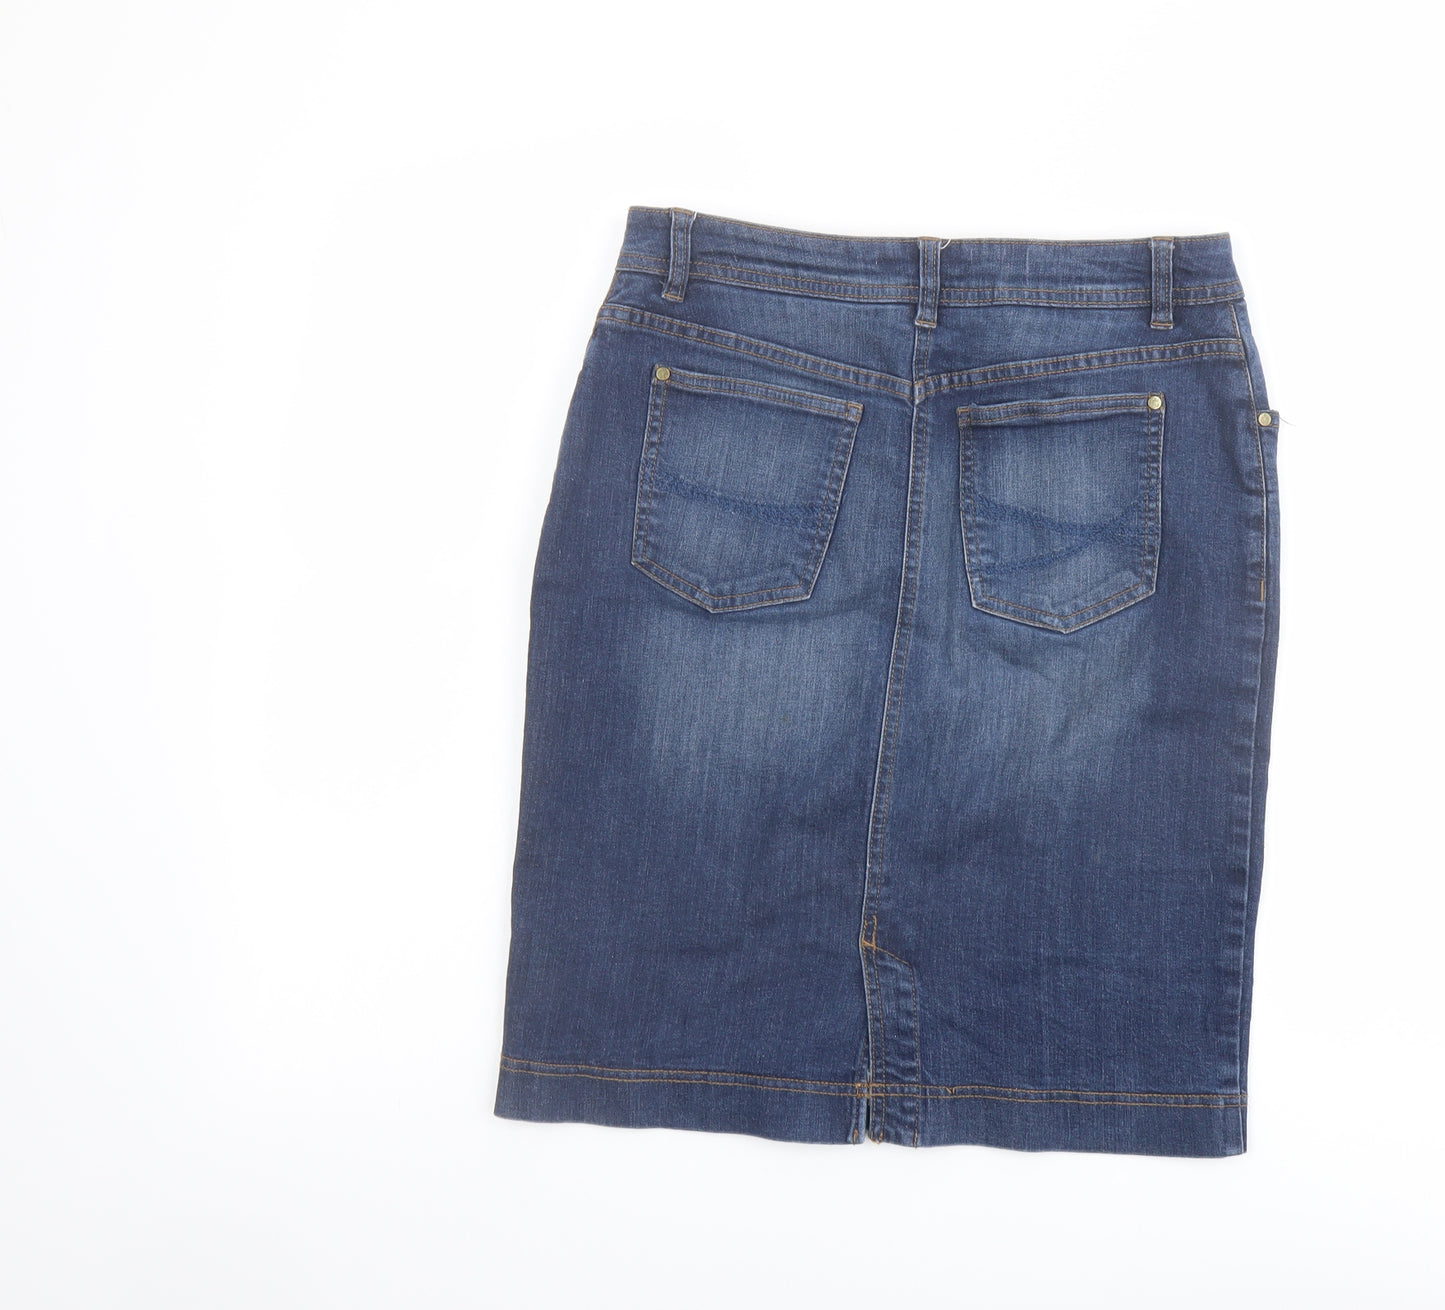 Seasalt Womens Blue Cotton A-Line Skirt Size 10 Button